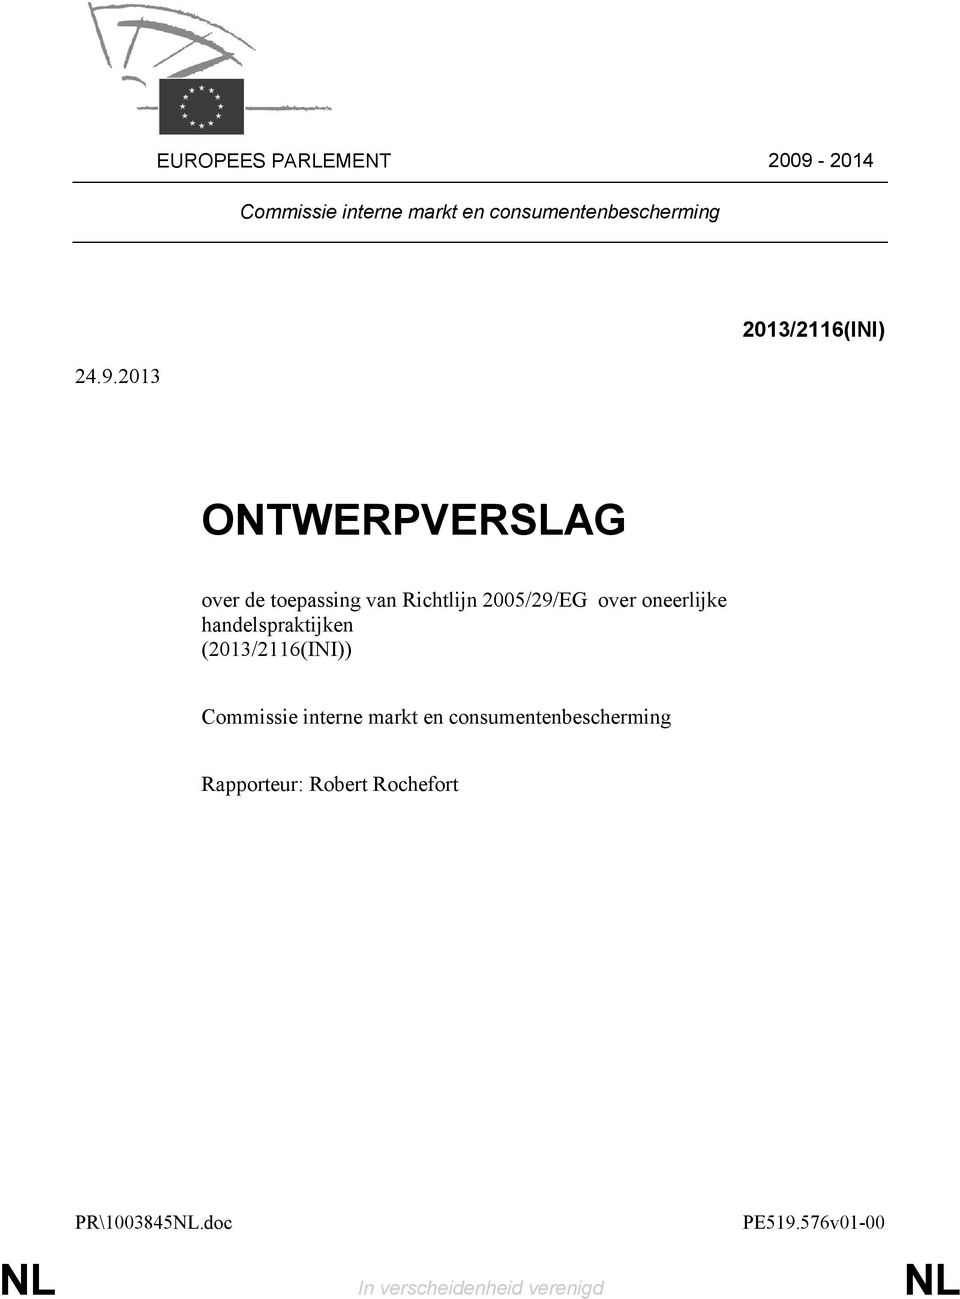 2013 2013/2116(INI) ONTWERPVERSLAG over de toepassing van Richtlijn 2005/29/EG over